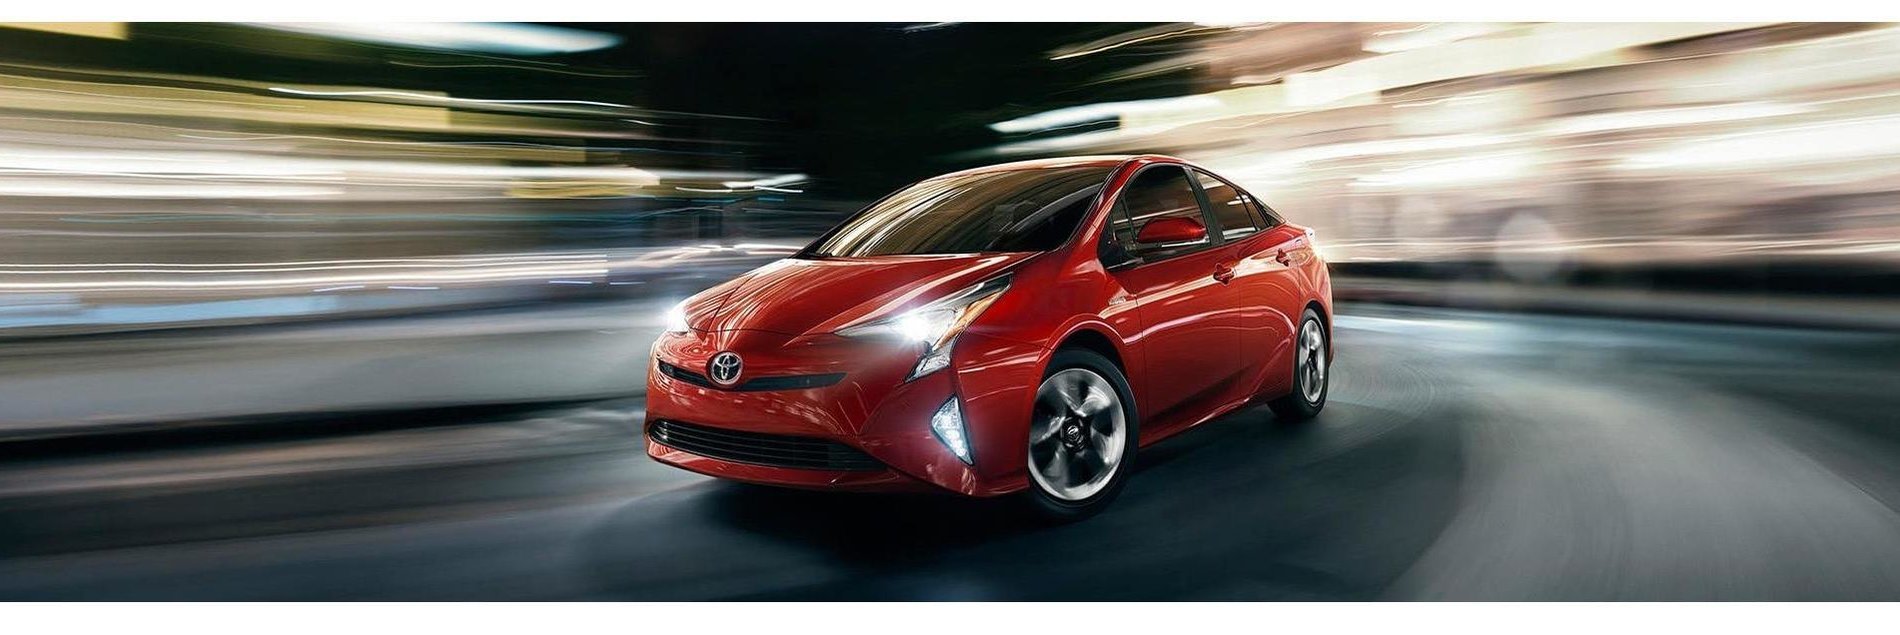 У будущего есть правильный ответ: Toyota начинает прием заказов на новый Prius в России